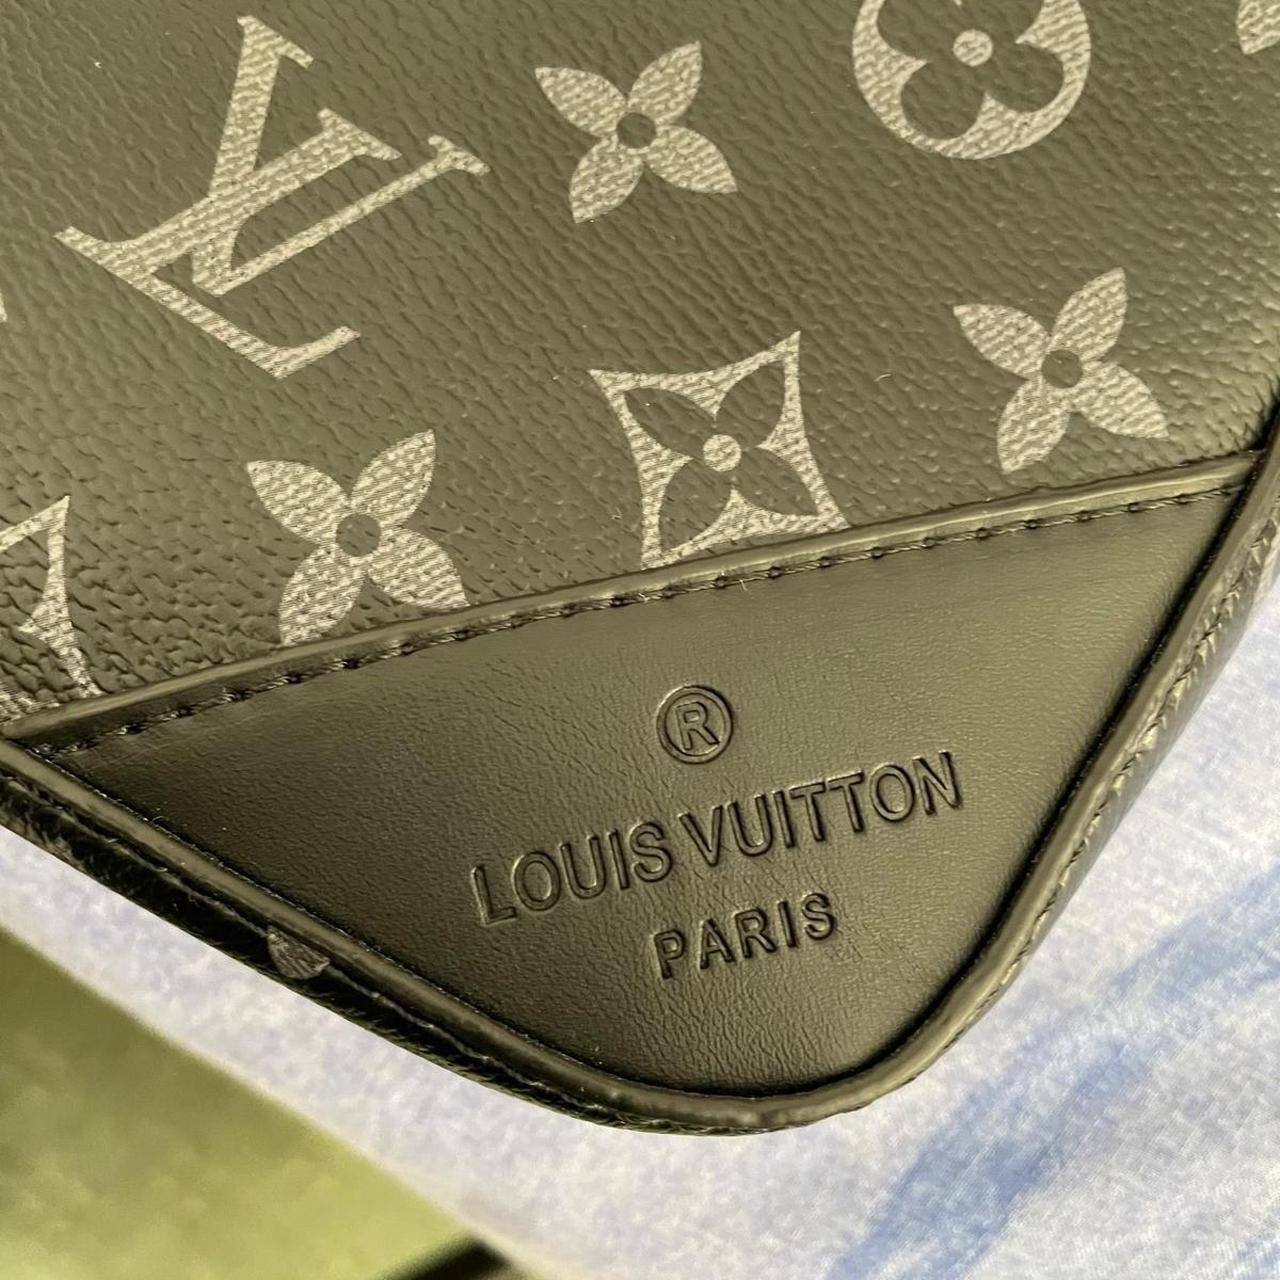 Louis Vuitton Monogram Empreinte (wild At Heart) - Depop